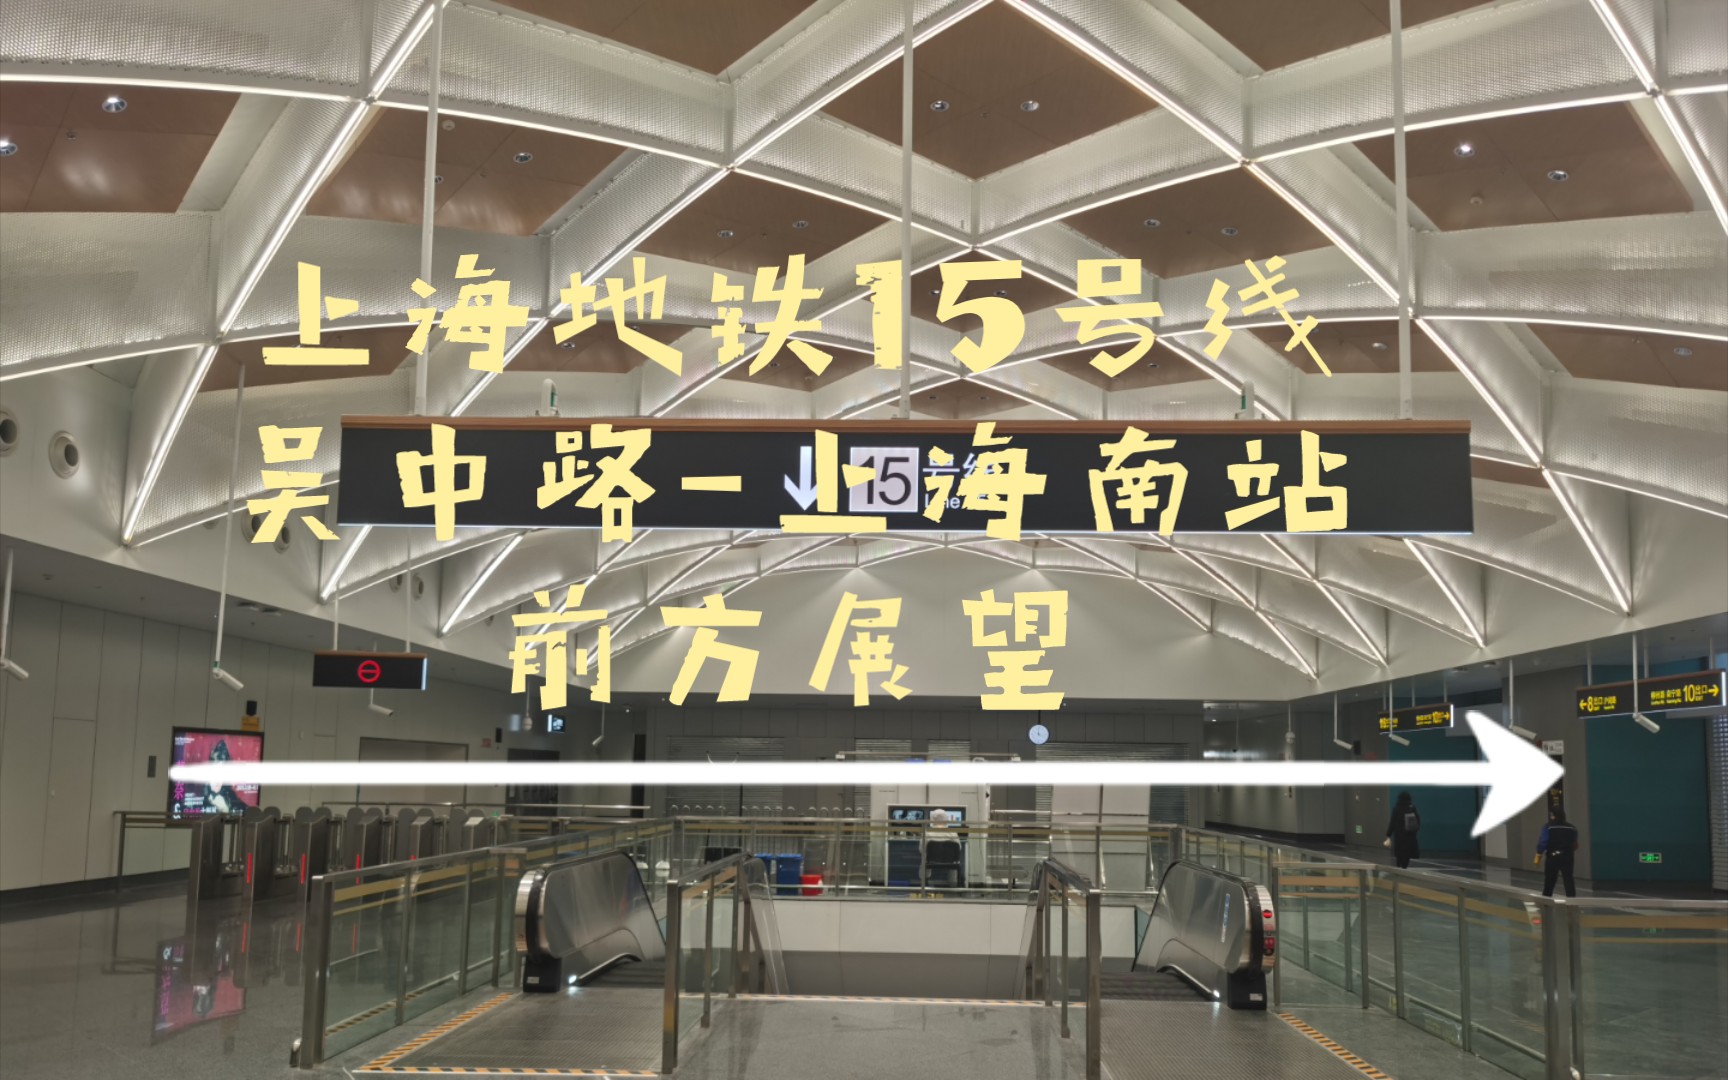 【上海轨道交通】上海地铁15号线 吴中路